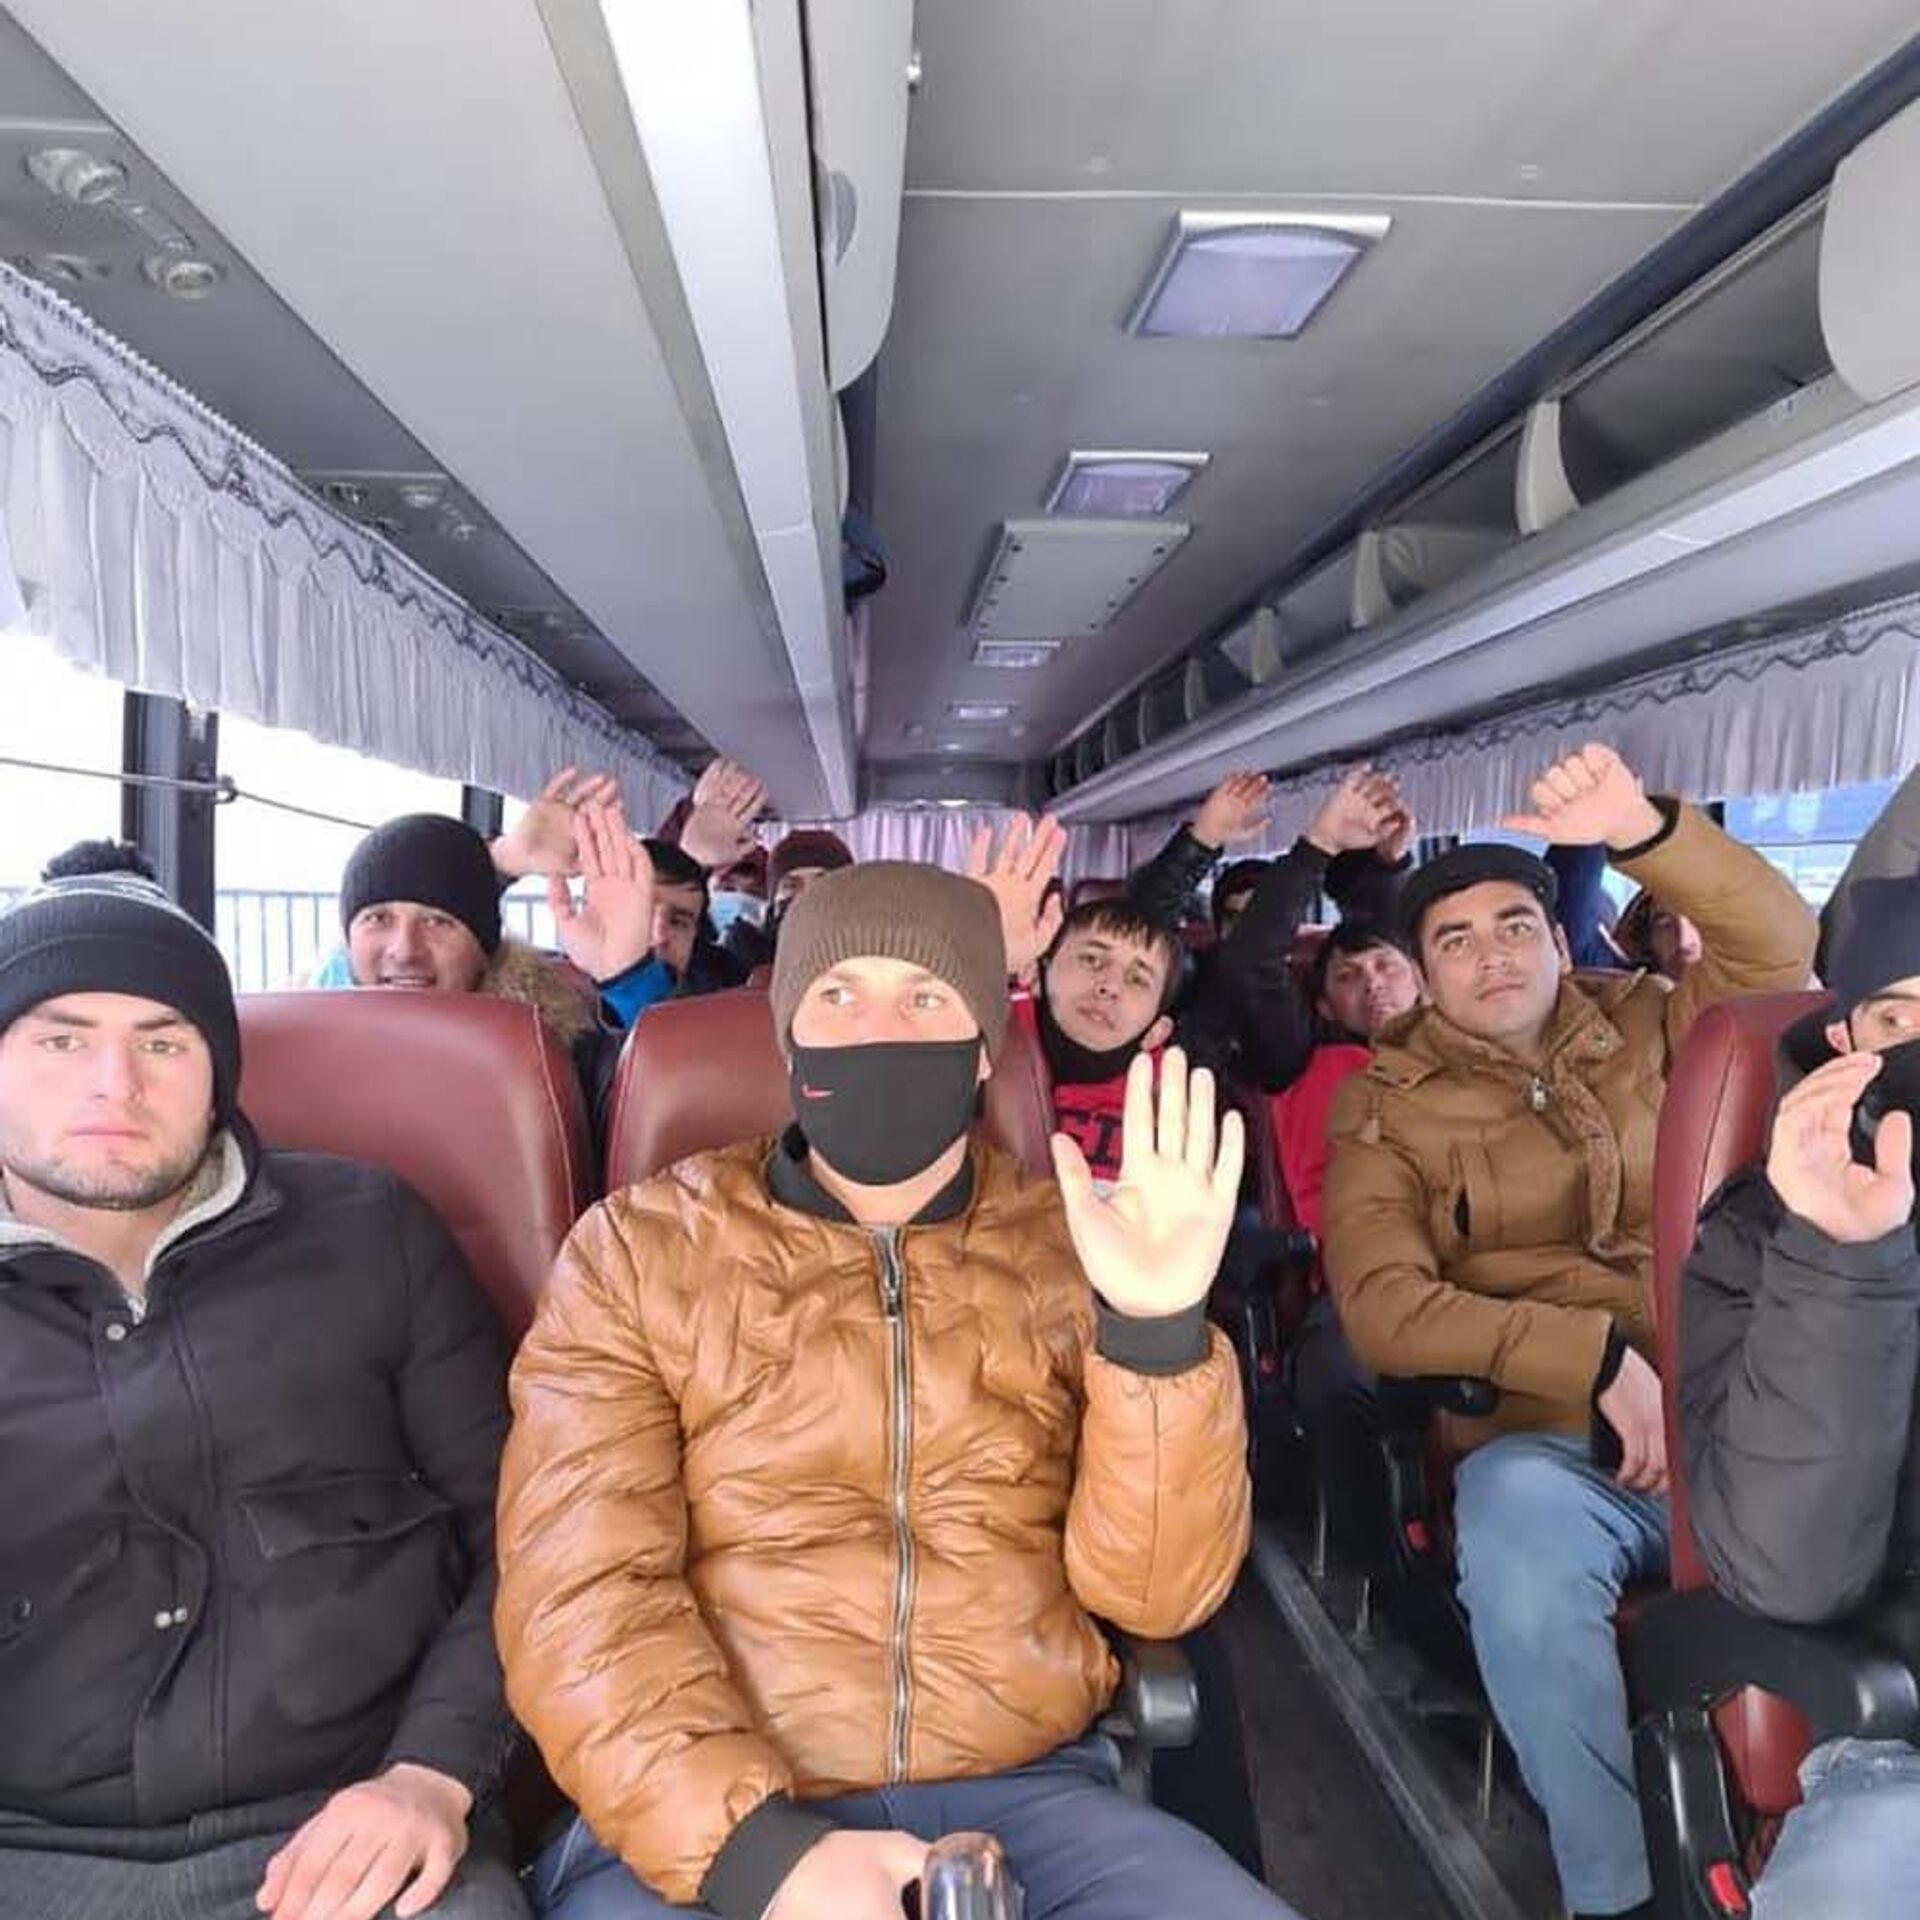 Таджики сейчас уезжают из россии. Мигранты в России. Мигранты Таджикистана в России. Миграция Таджикистан 2020. Таджикские мигранты около самолета.